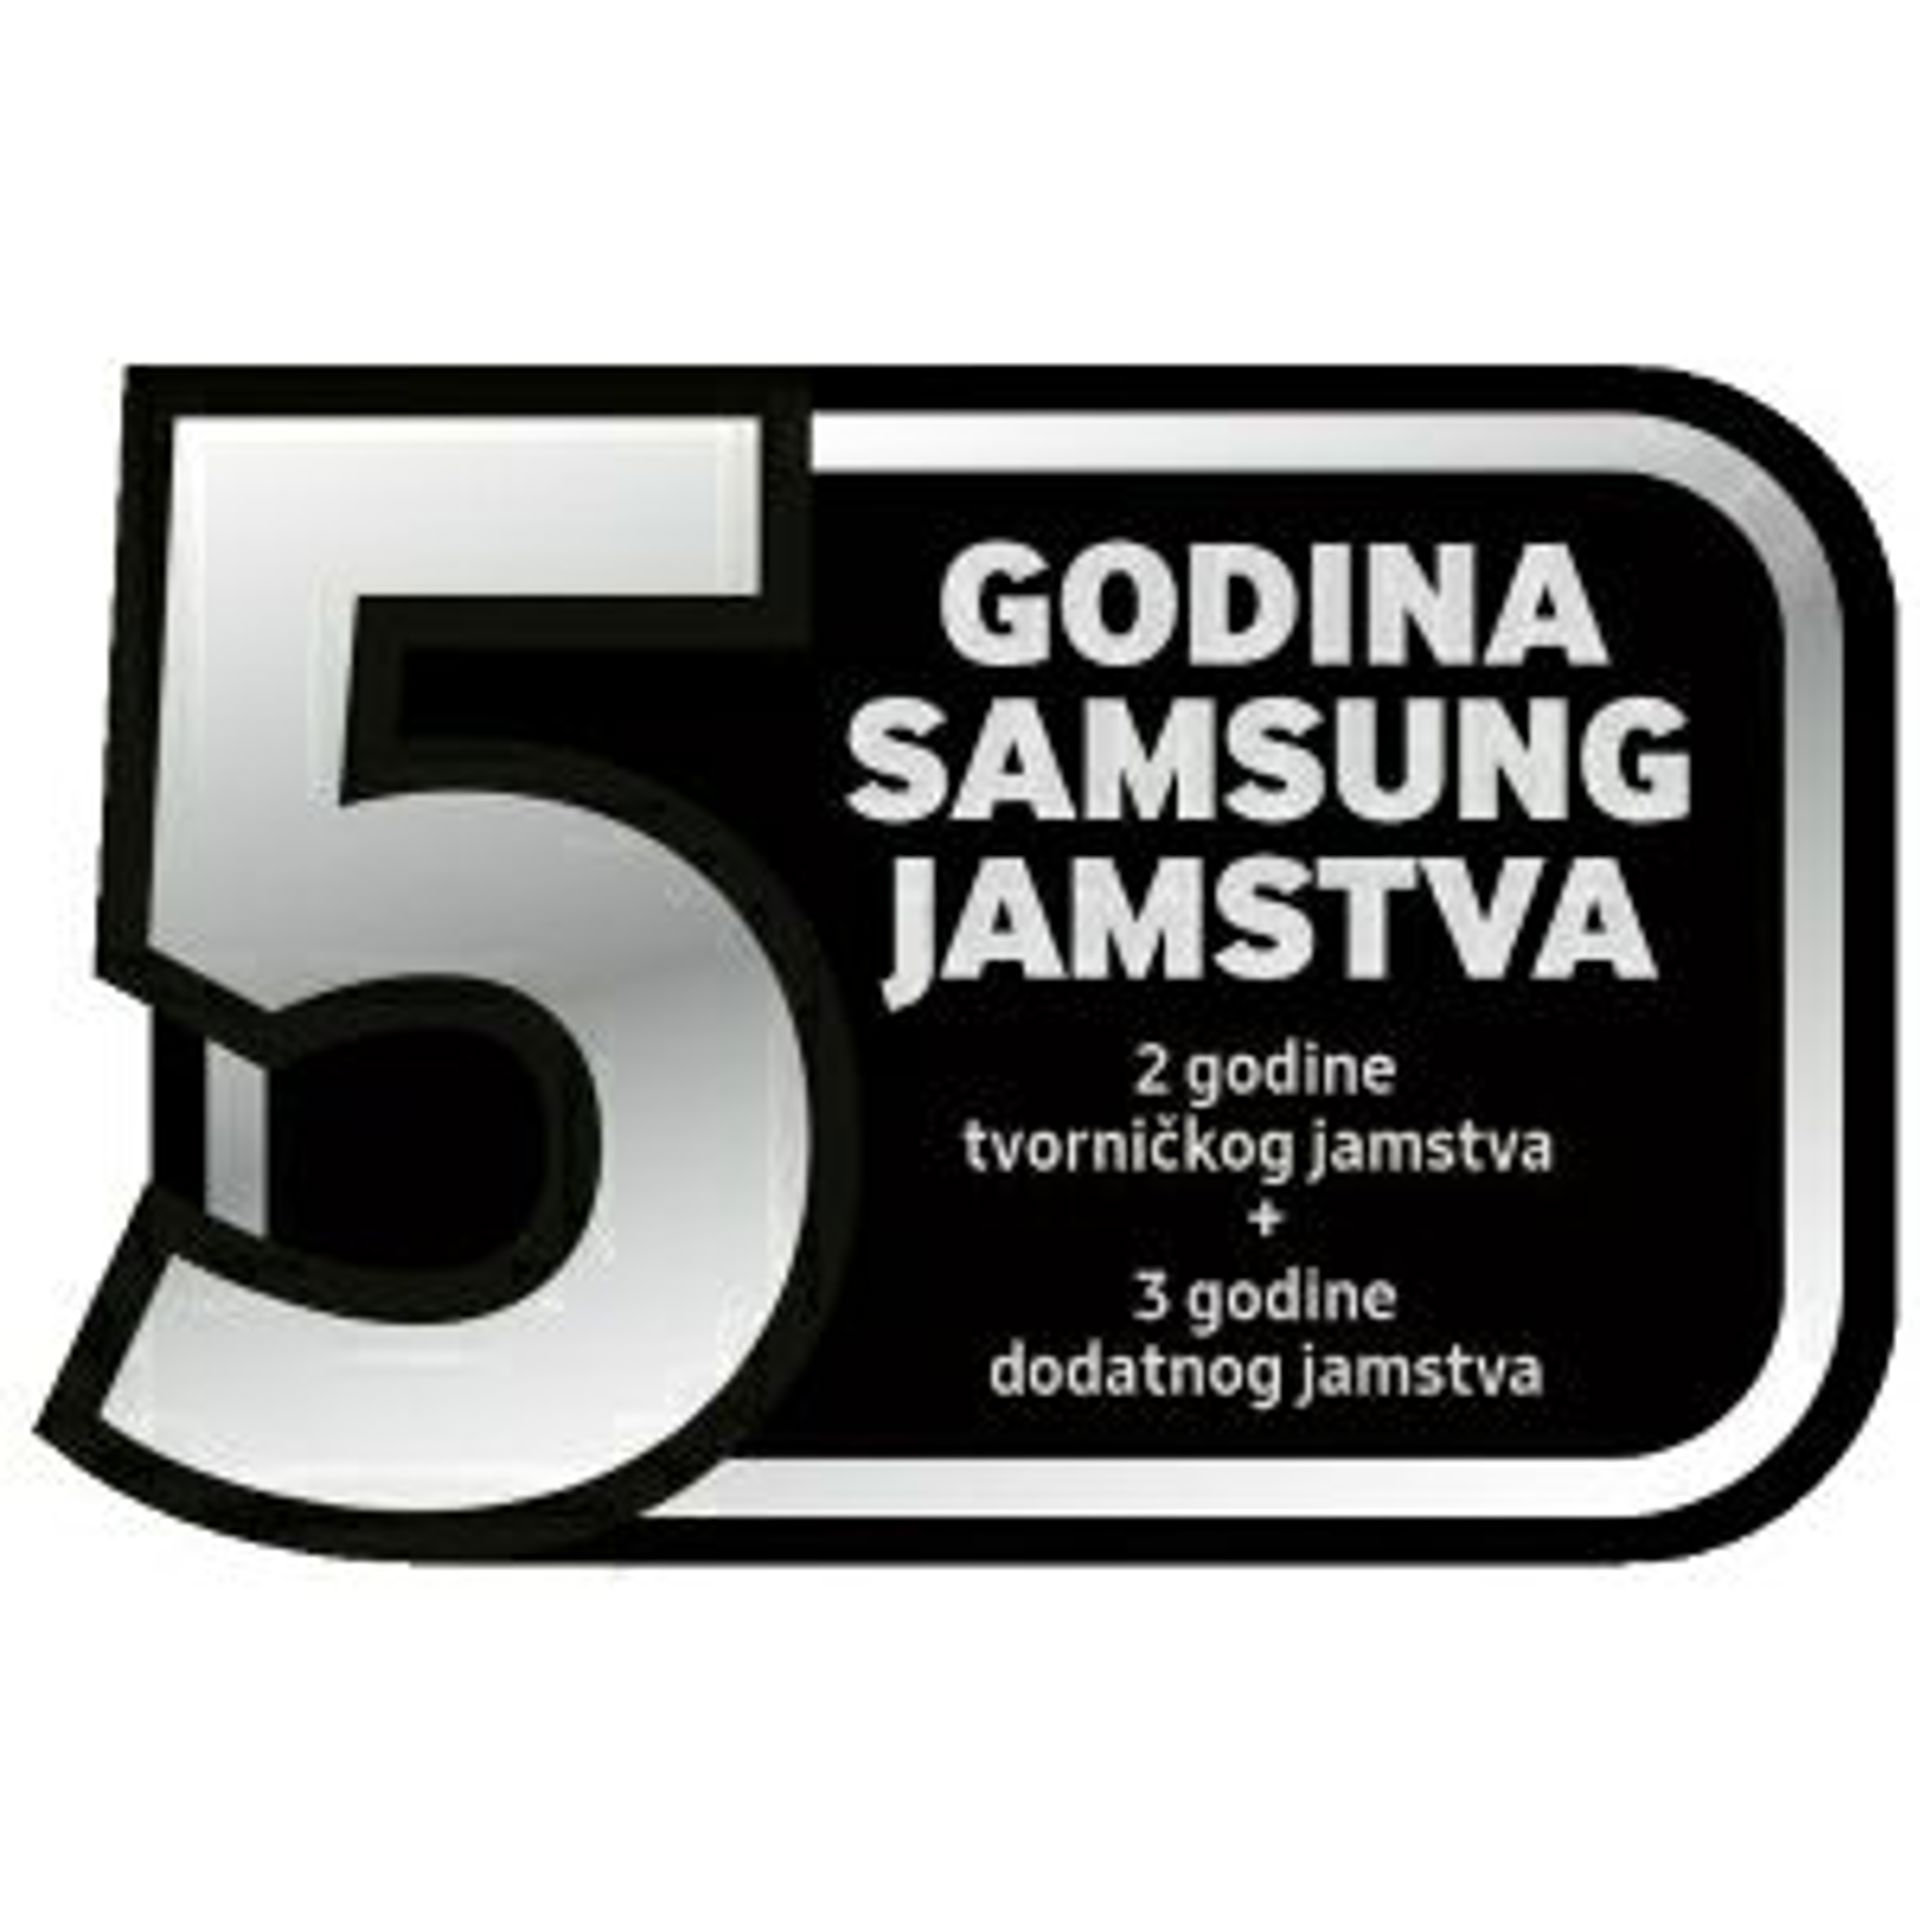 Samsung bijela tehnika i usisavači sa 5 godina jamstva